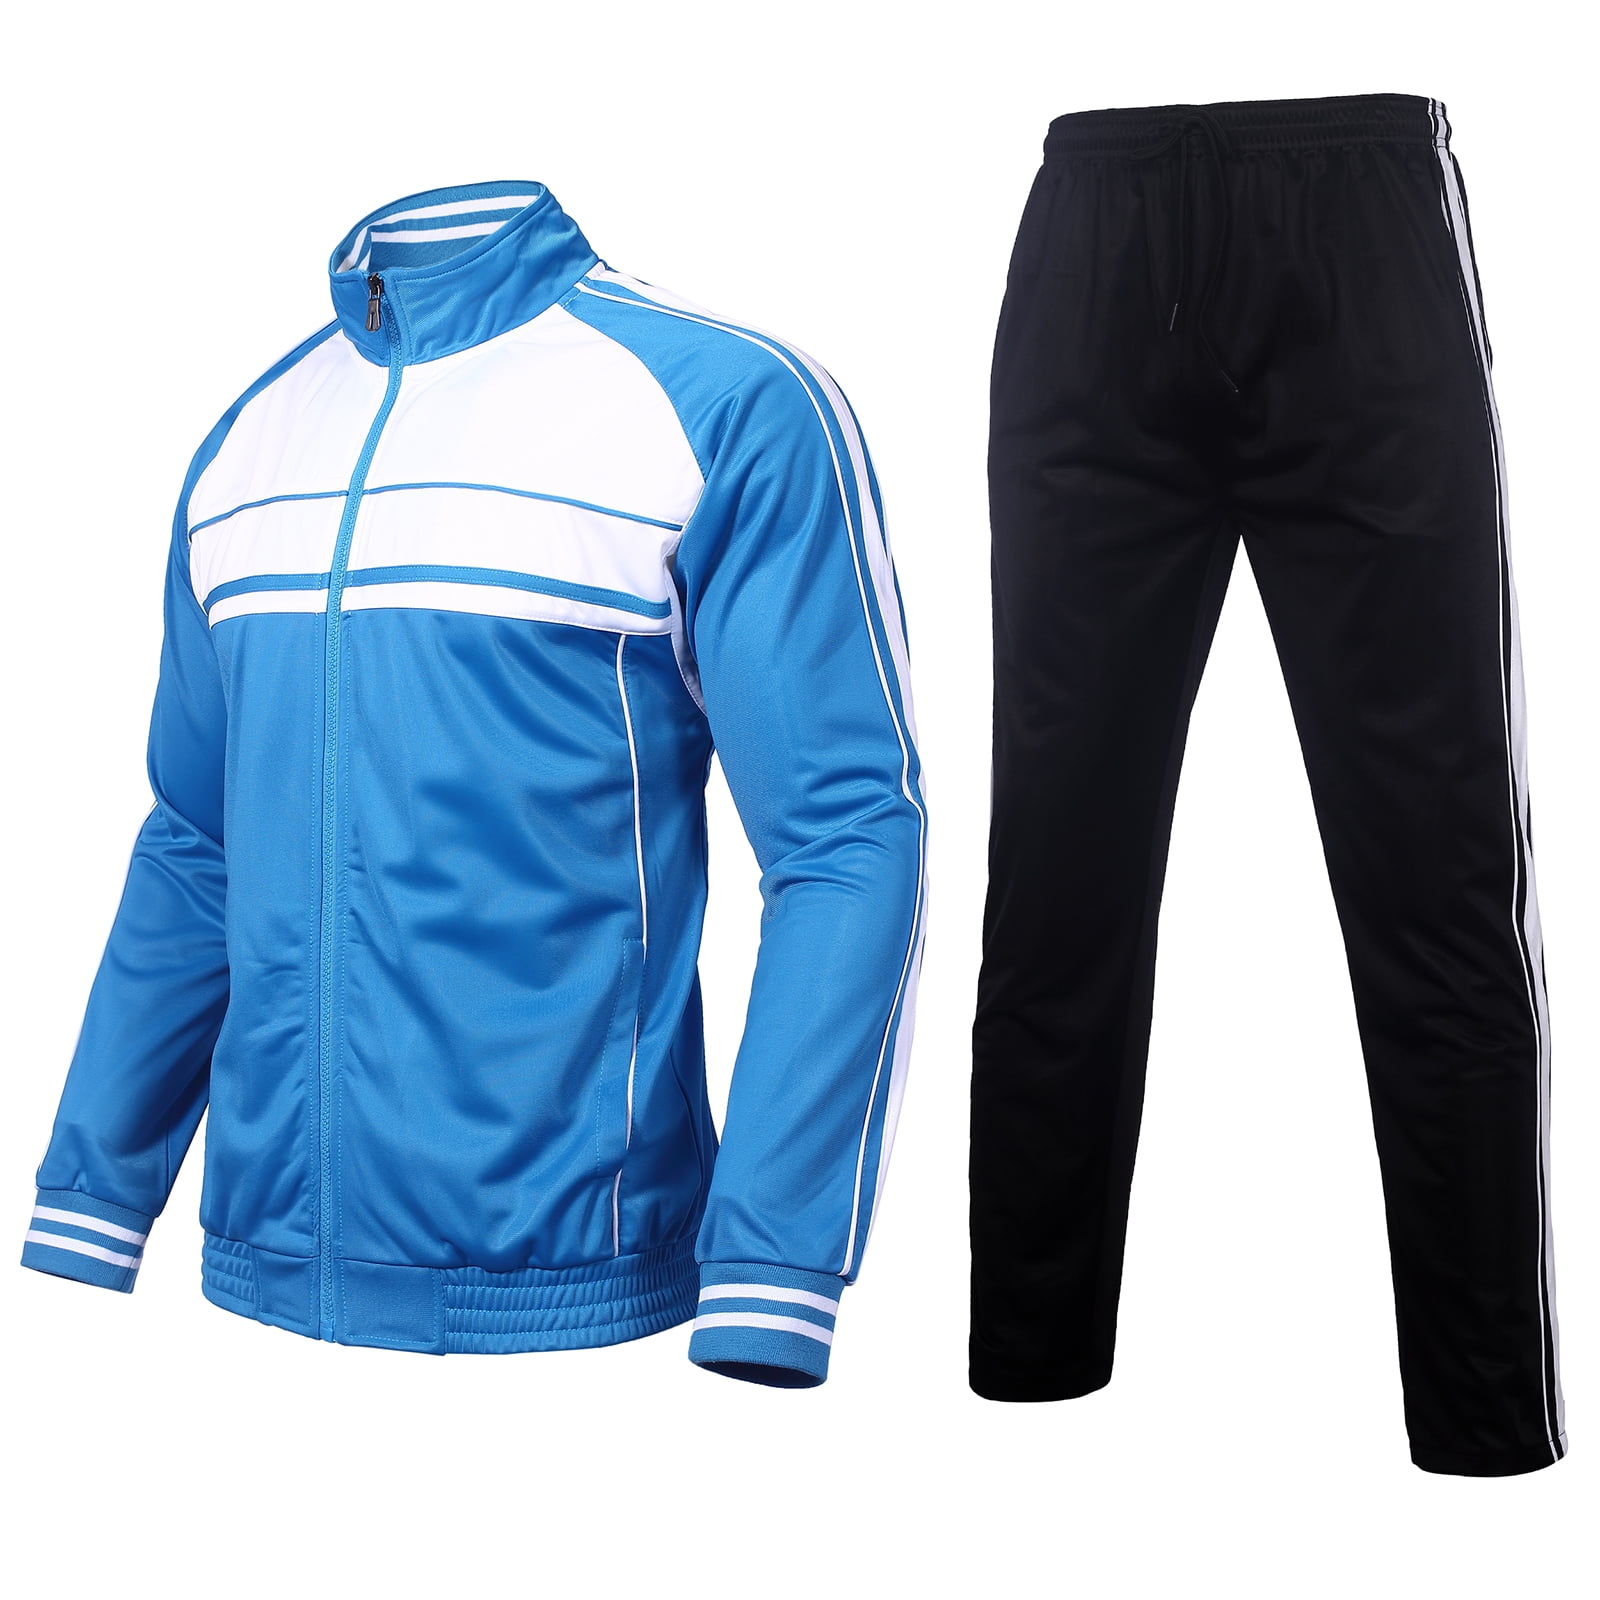 Jordan Winter Track Suit For Men » Buy online from ShopnSafe-nextbuild.com.vn